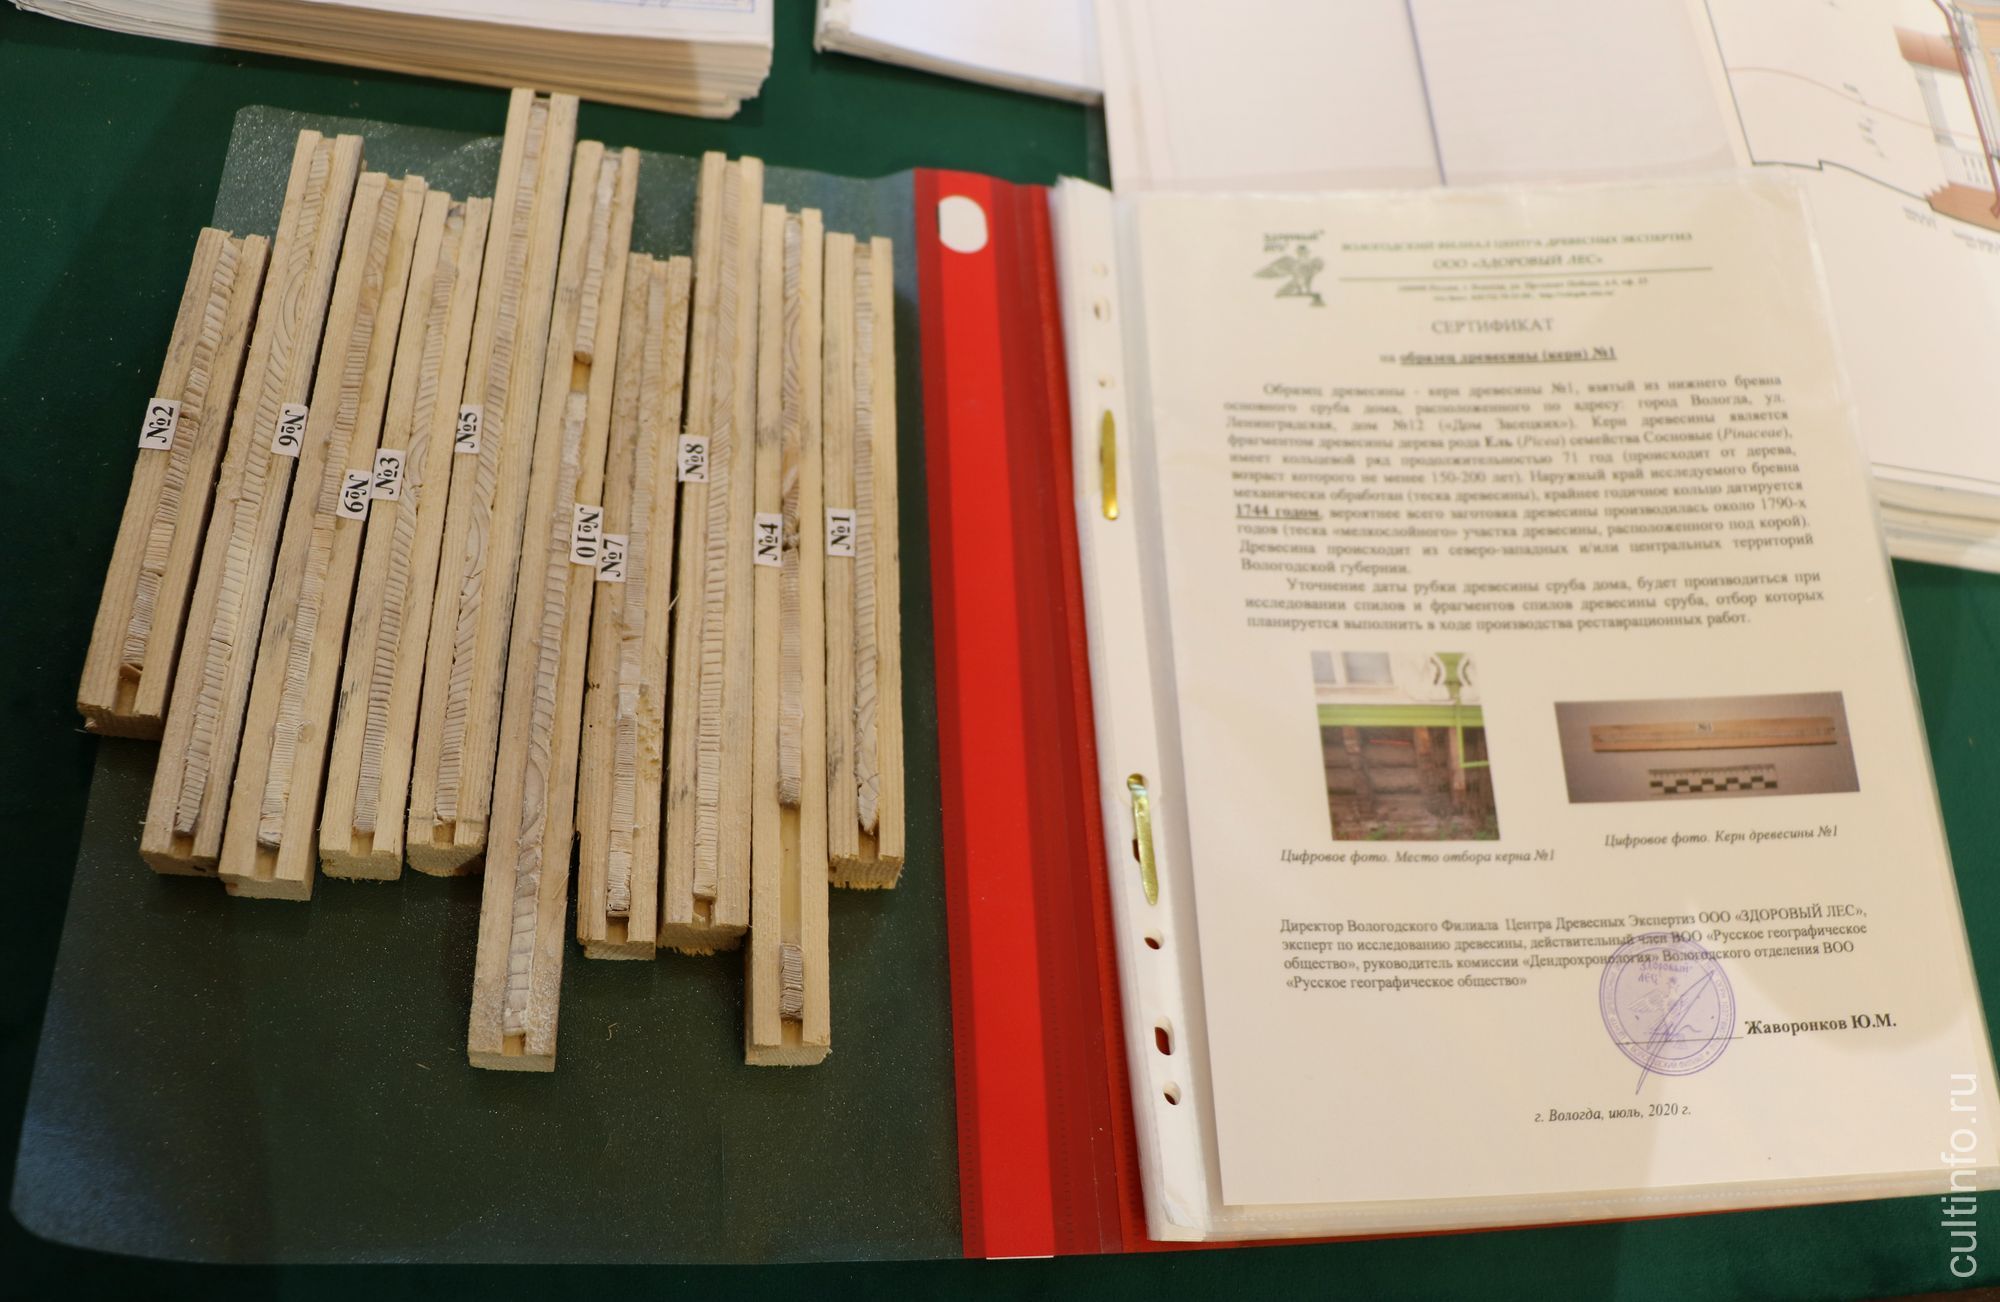 Керны древесины сруба и заключение эксперта о возрасте древесины, использованной для постройки и перестроек дома